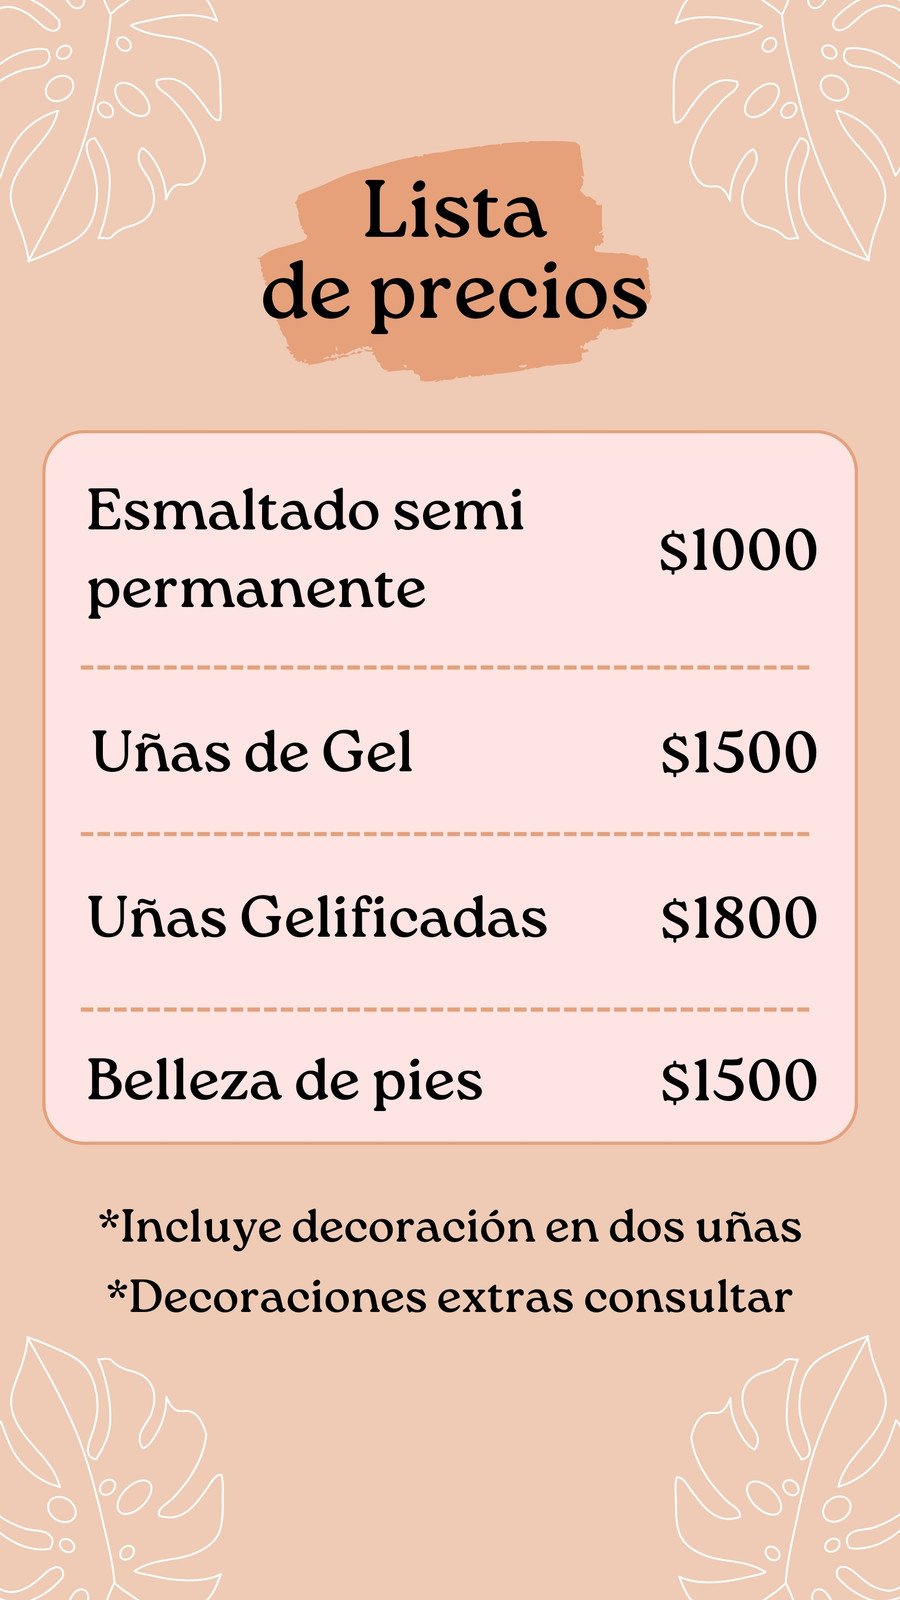 Plantilla gratuita de lista de precios de maquillaje gris simple para editar